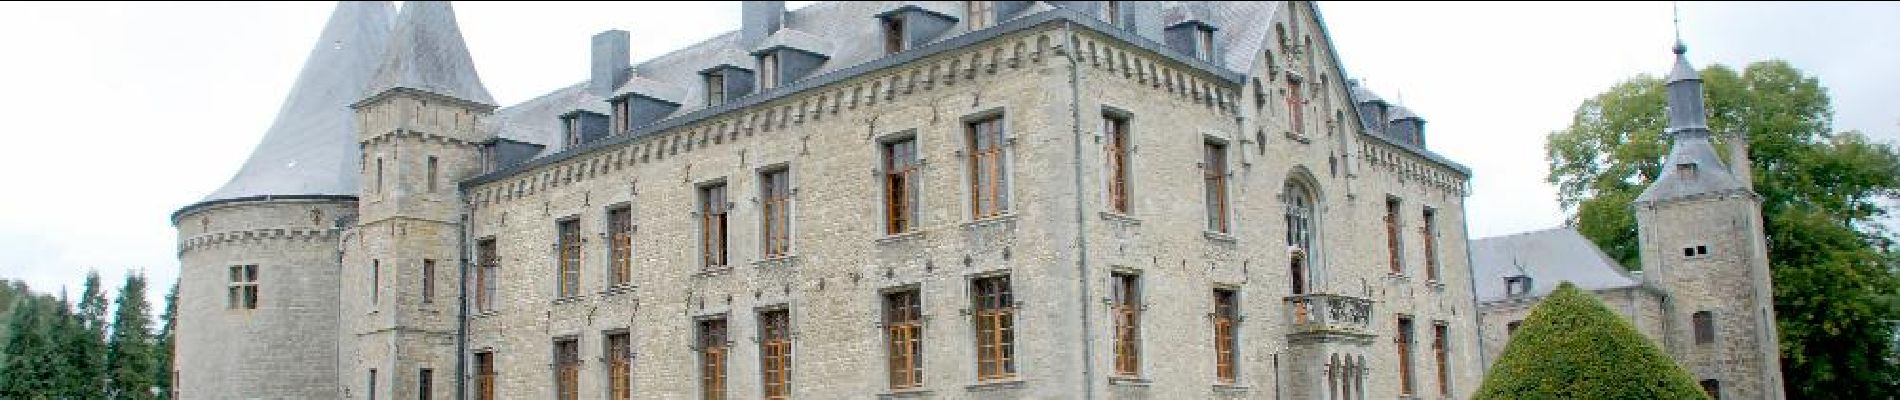 Punto de interés Couvin - Boussu-en-Fagne Castle - Photo